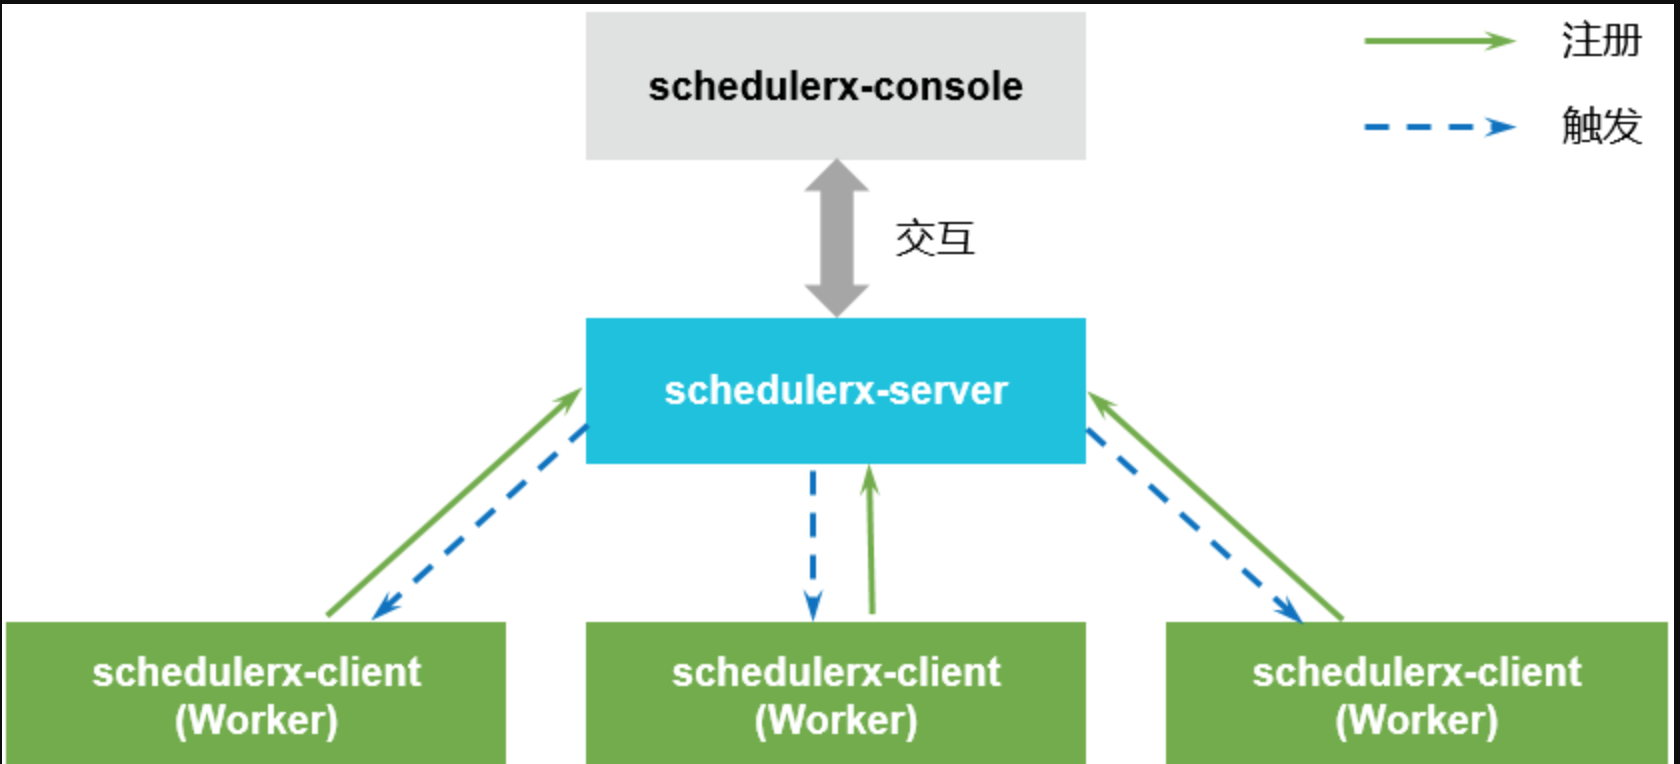 SchedulerX 1.0 架构图